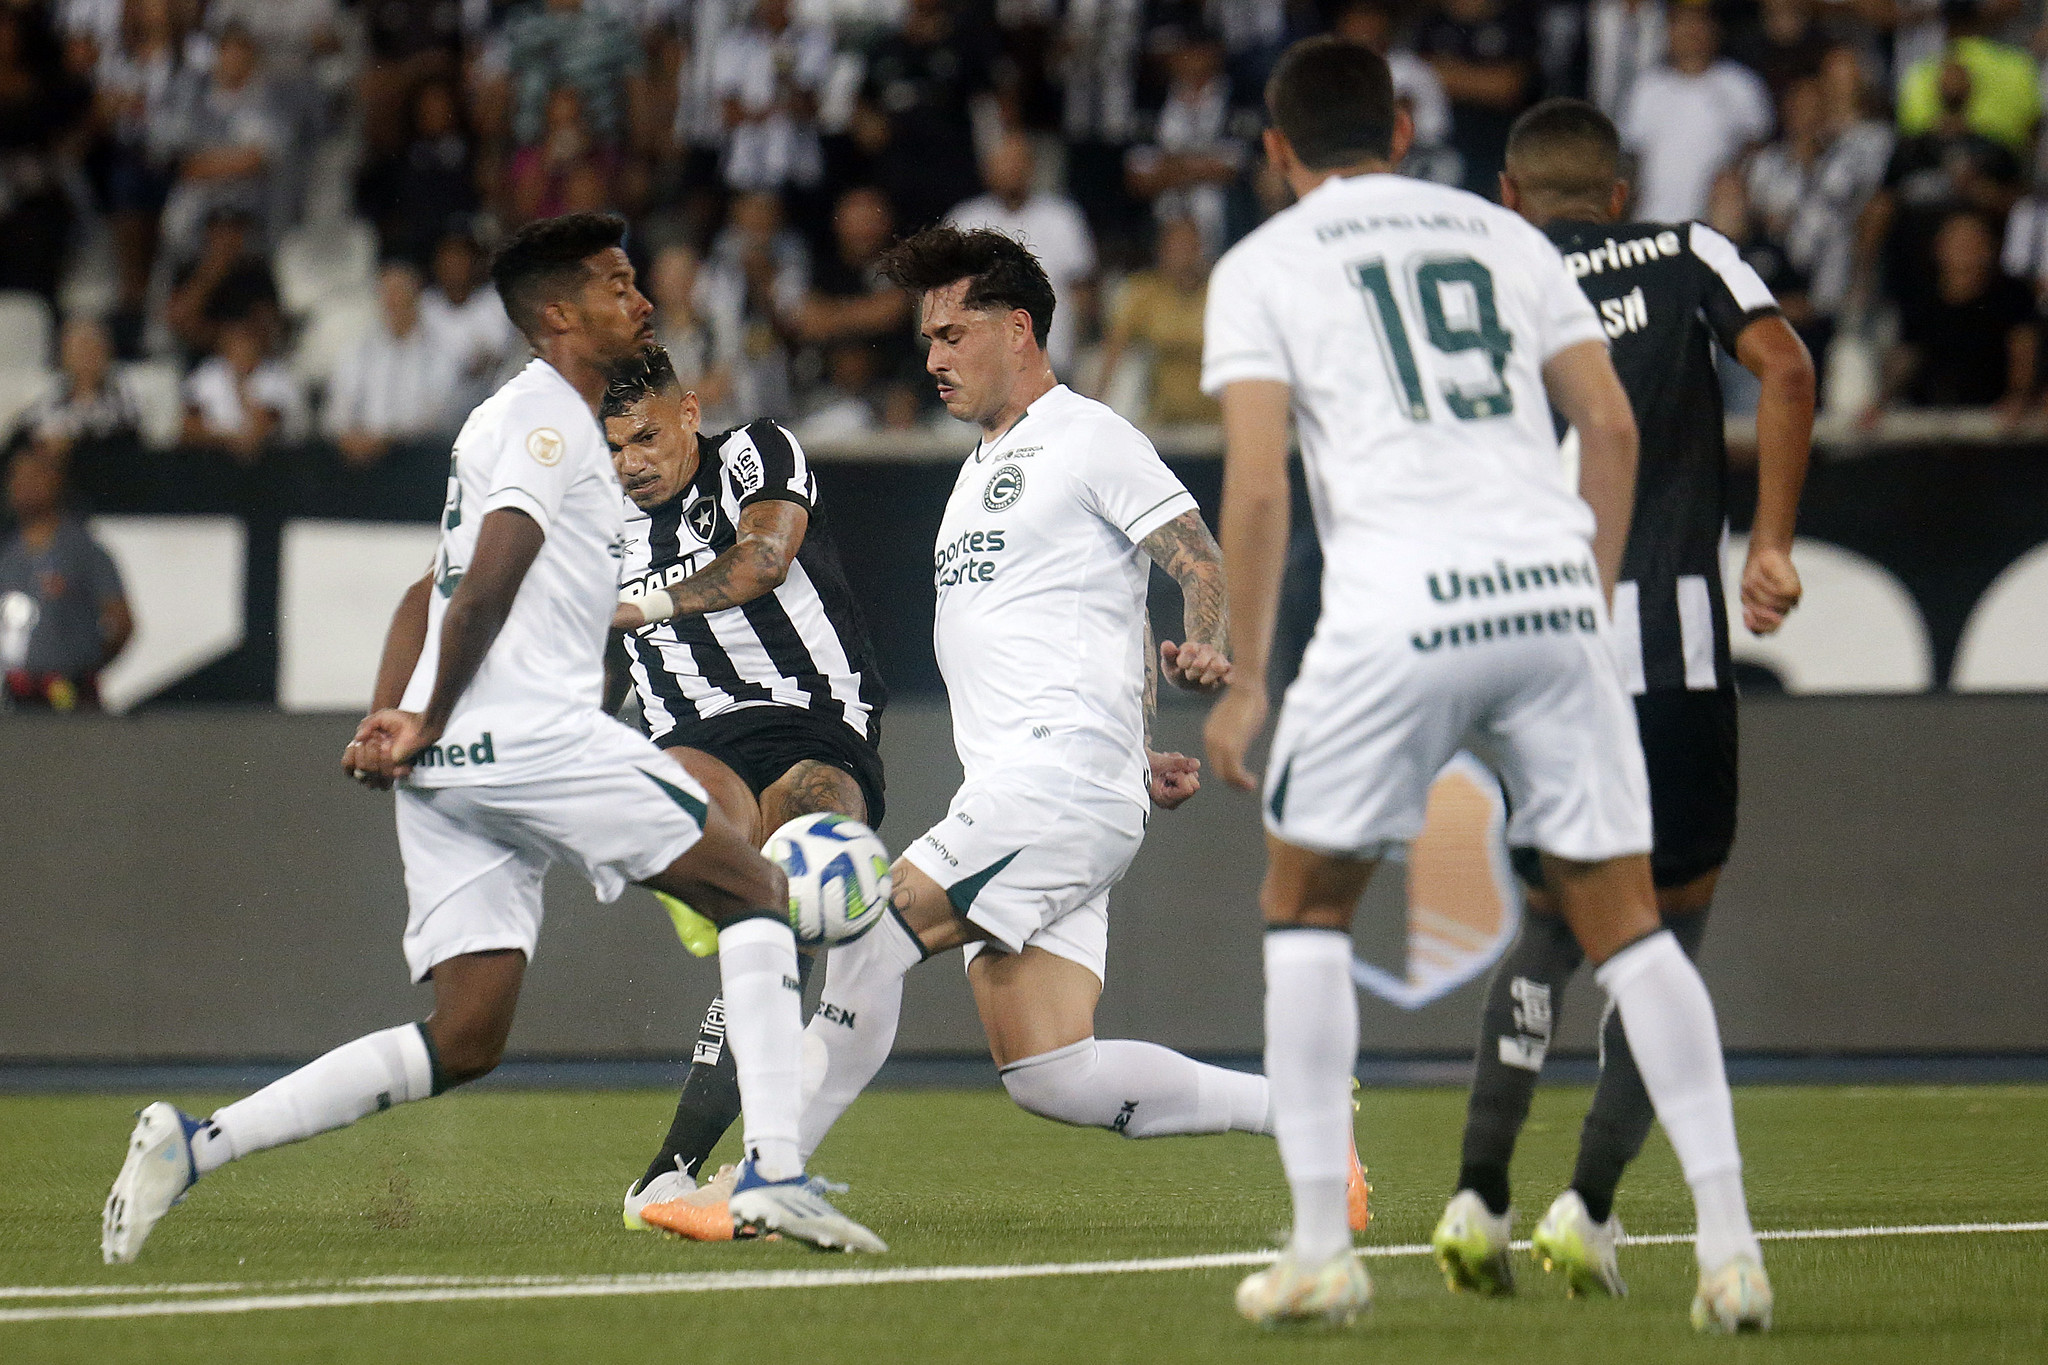 Botafogo empata com o São Caetano e agora muda o foco para a Série C -  Botafogo Futebol SA